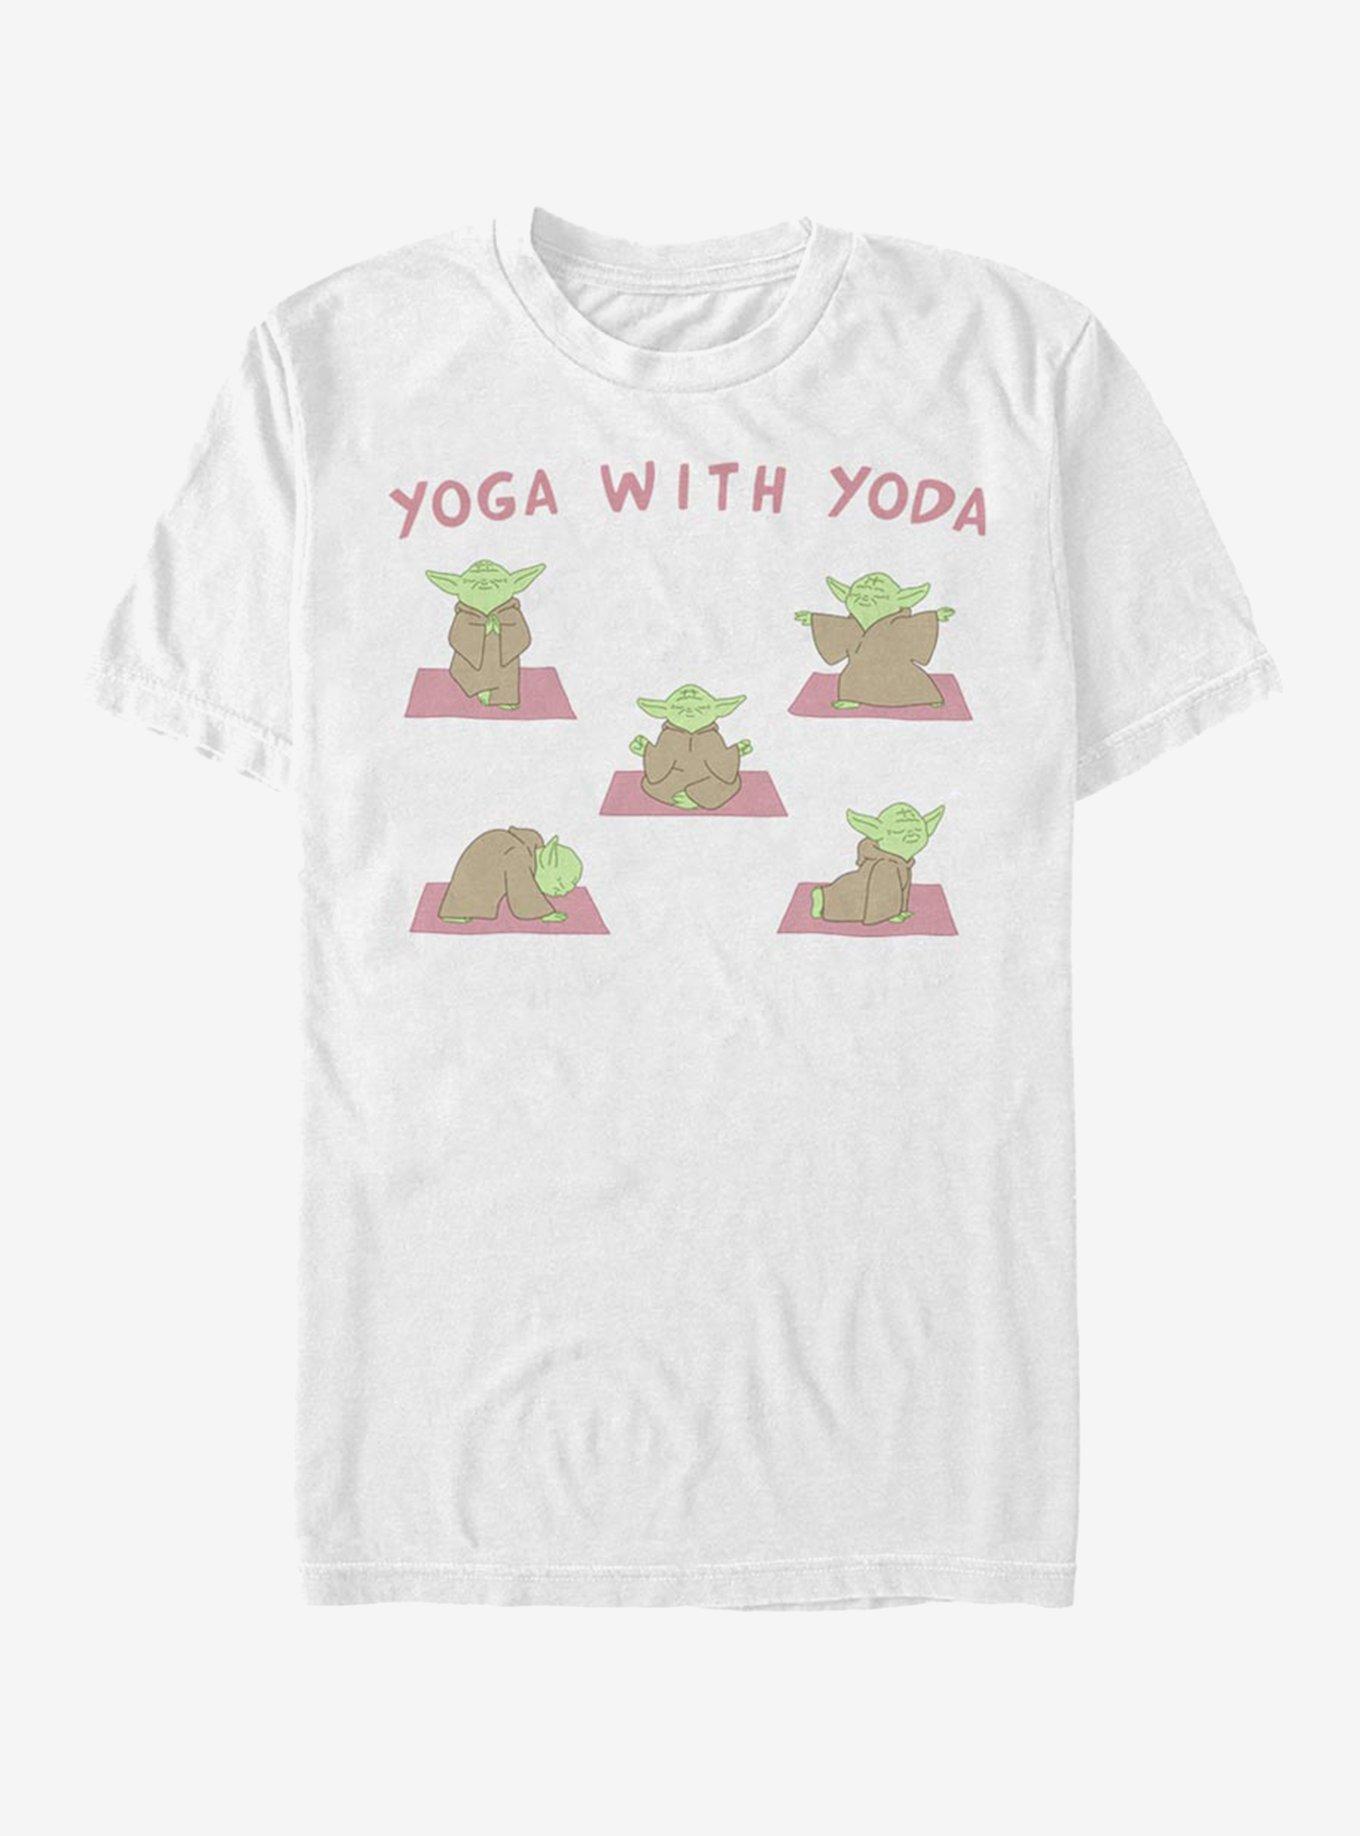 Star Wars Yoga With Yoda T-Shirt